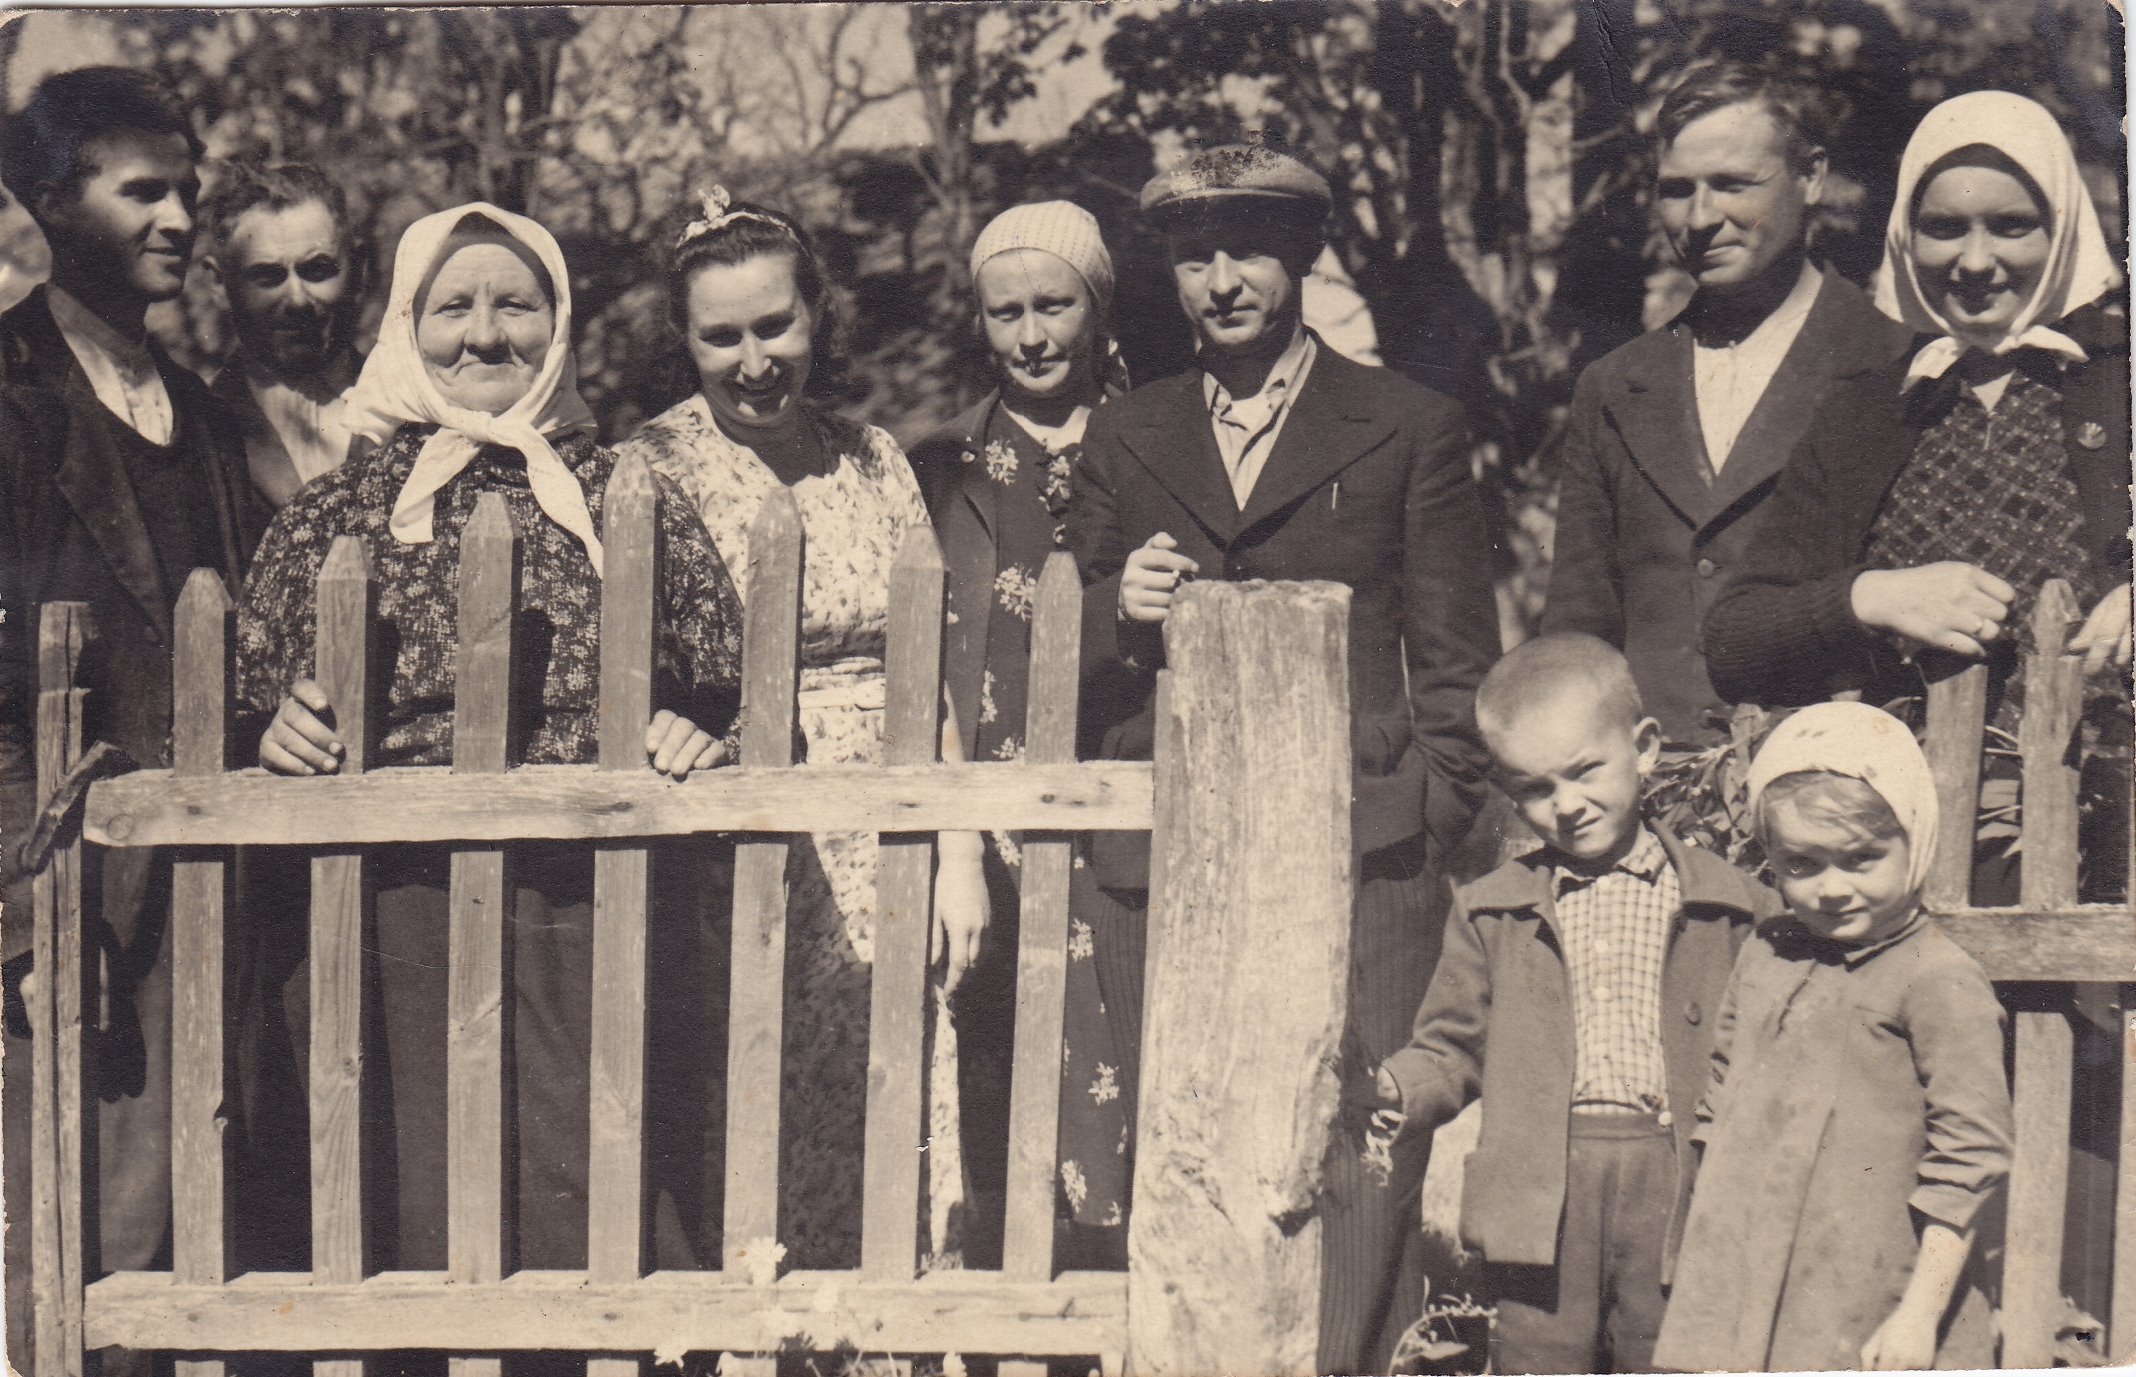 Vasinauskų šeima. Motina Agota Vasinauskienė (Čeponytė) (trečia iš kairės), Petras Vasinauskas (šeštas iš kairės). 1934 m.   